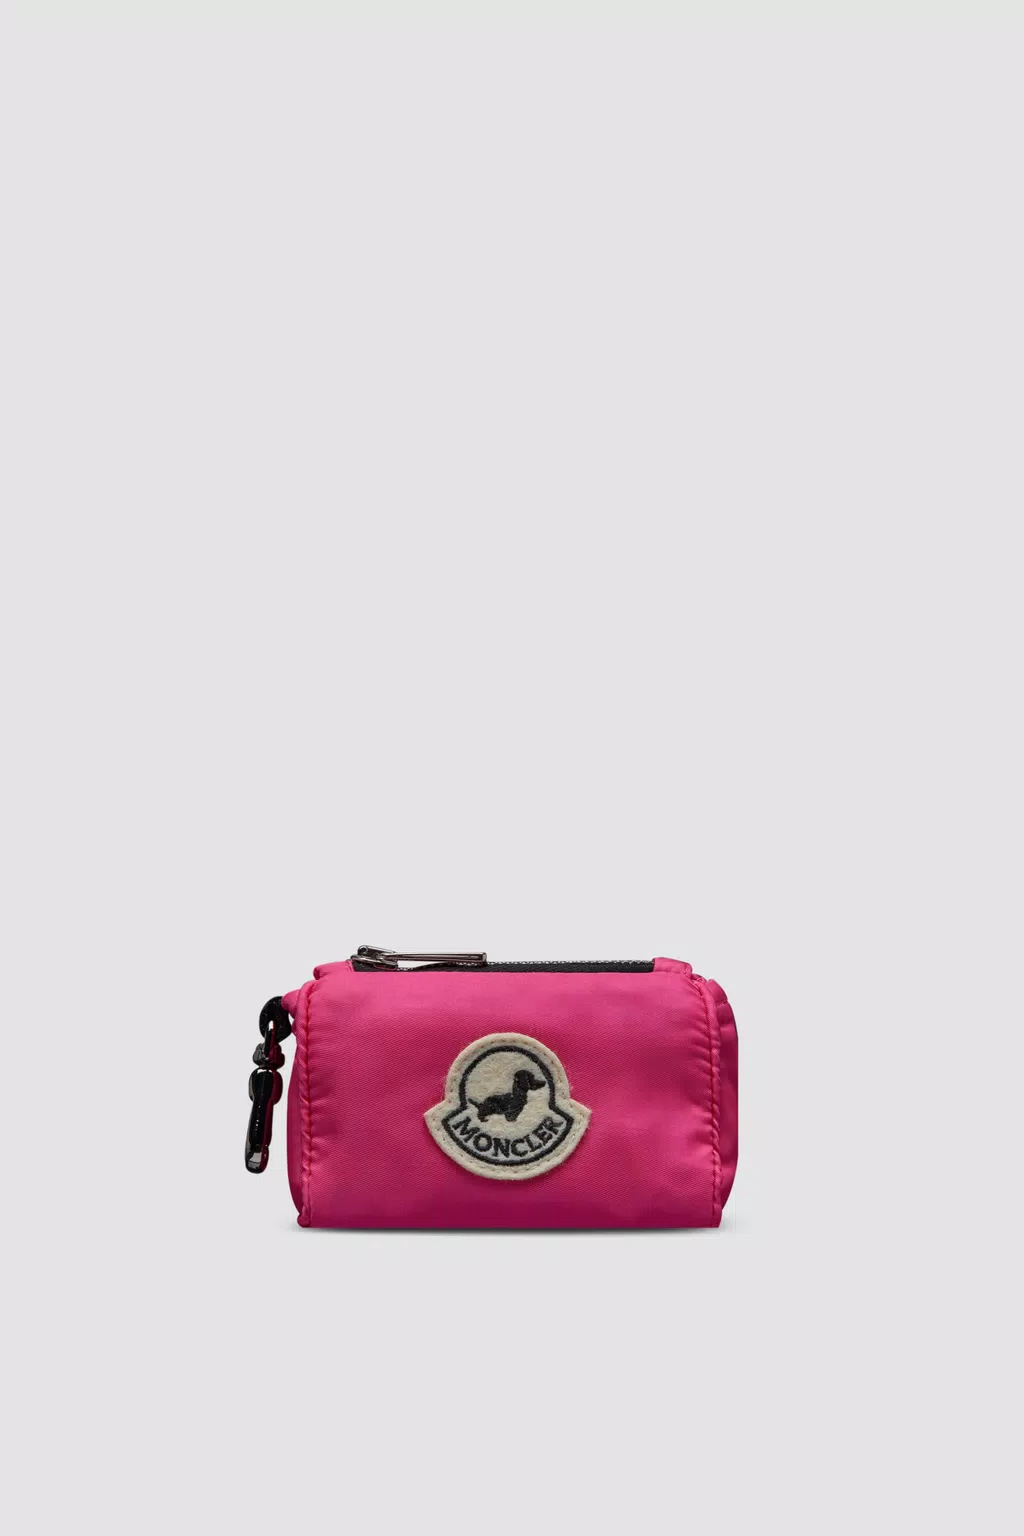 Dog Bag Holder Gender Neutral Pink Moncler 1